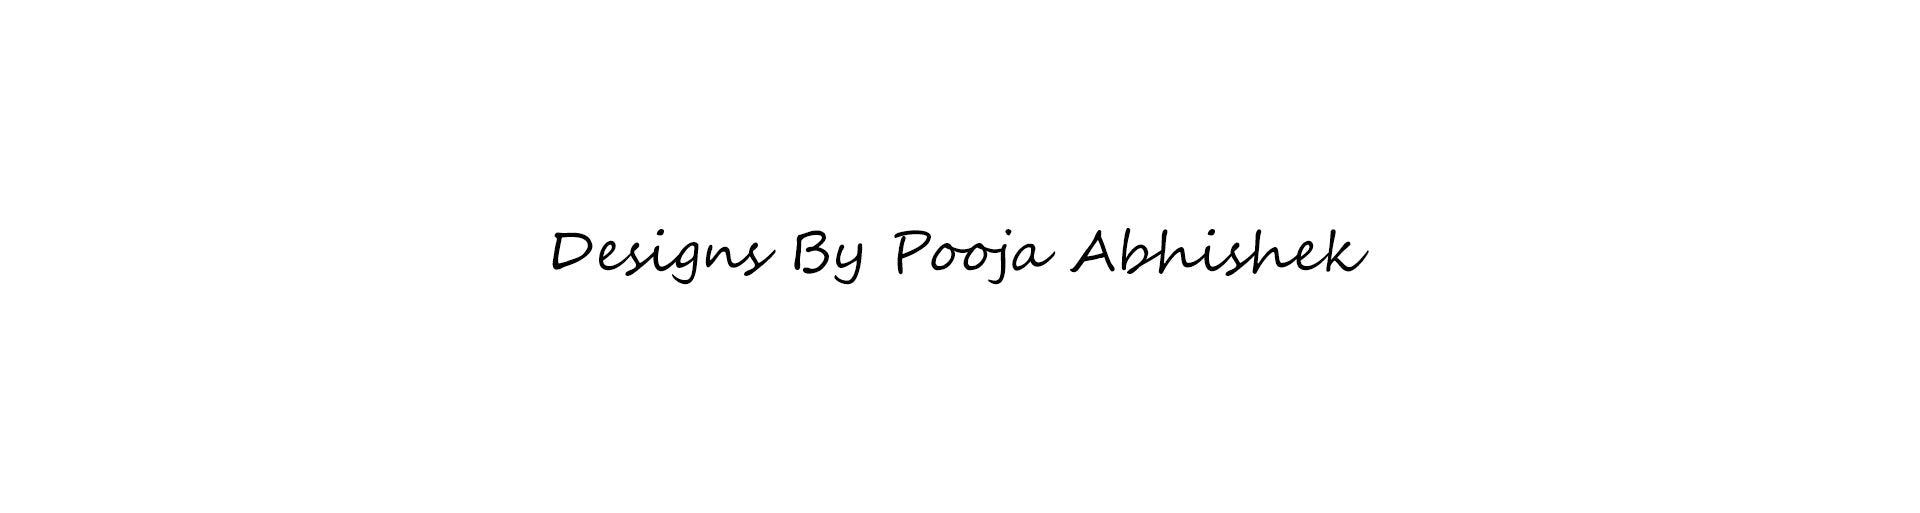 Pooja Abhishek